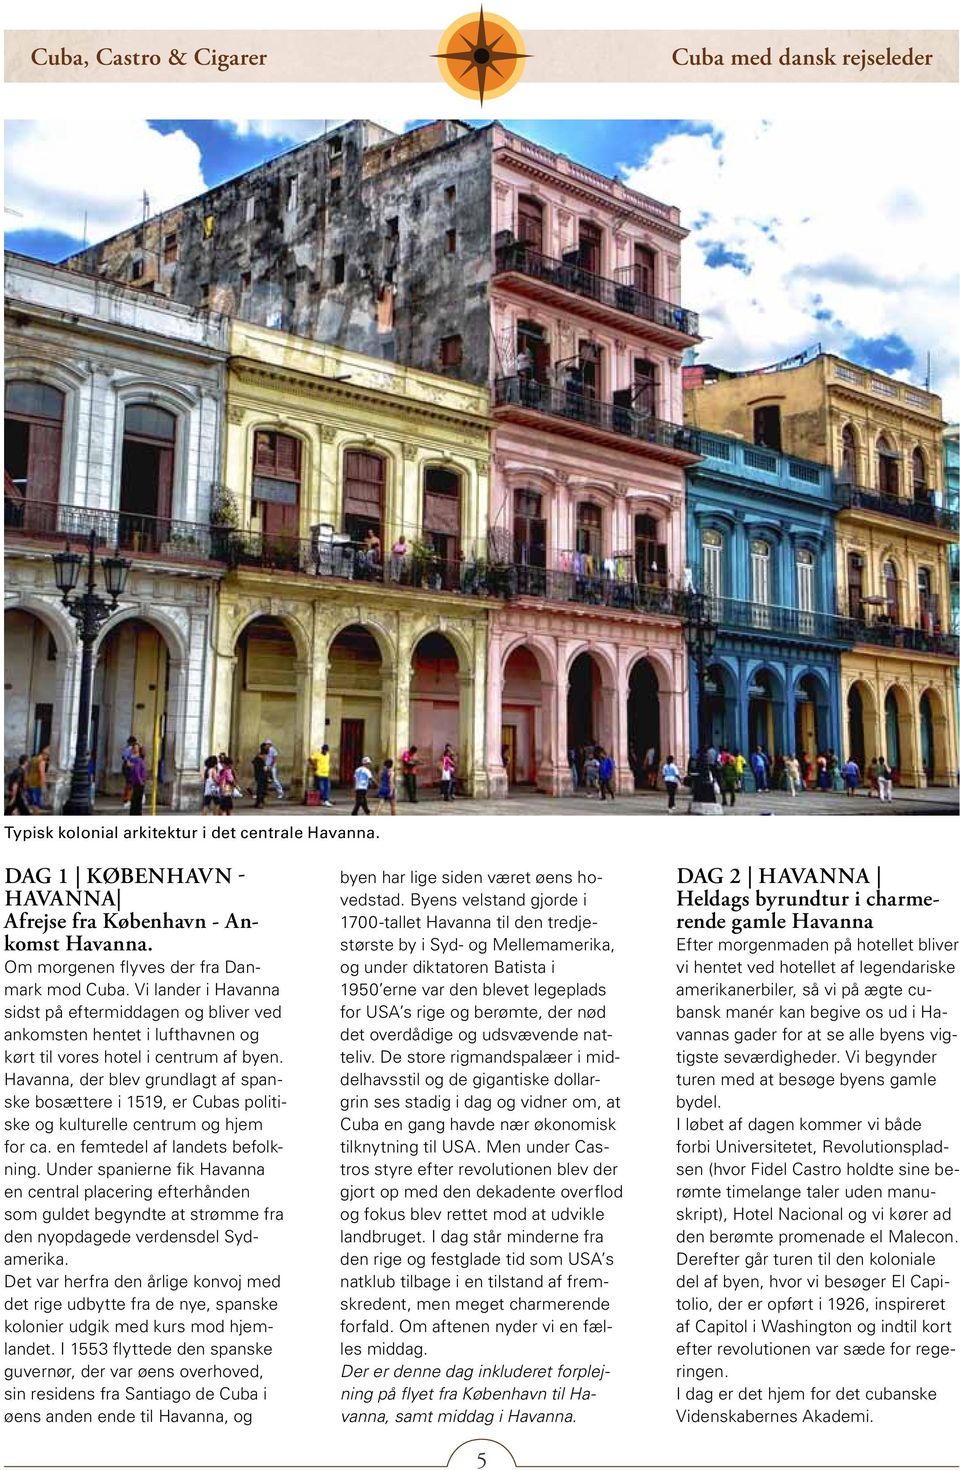 Havanna, der blev grundlagt af spanske bosættere i 1519, er Cubas politiske og kulturelle centrum og hjem for ca. en femtedel af landets befolkning.